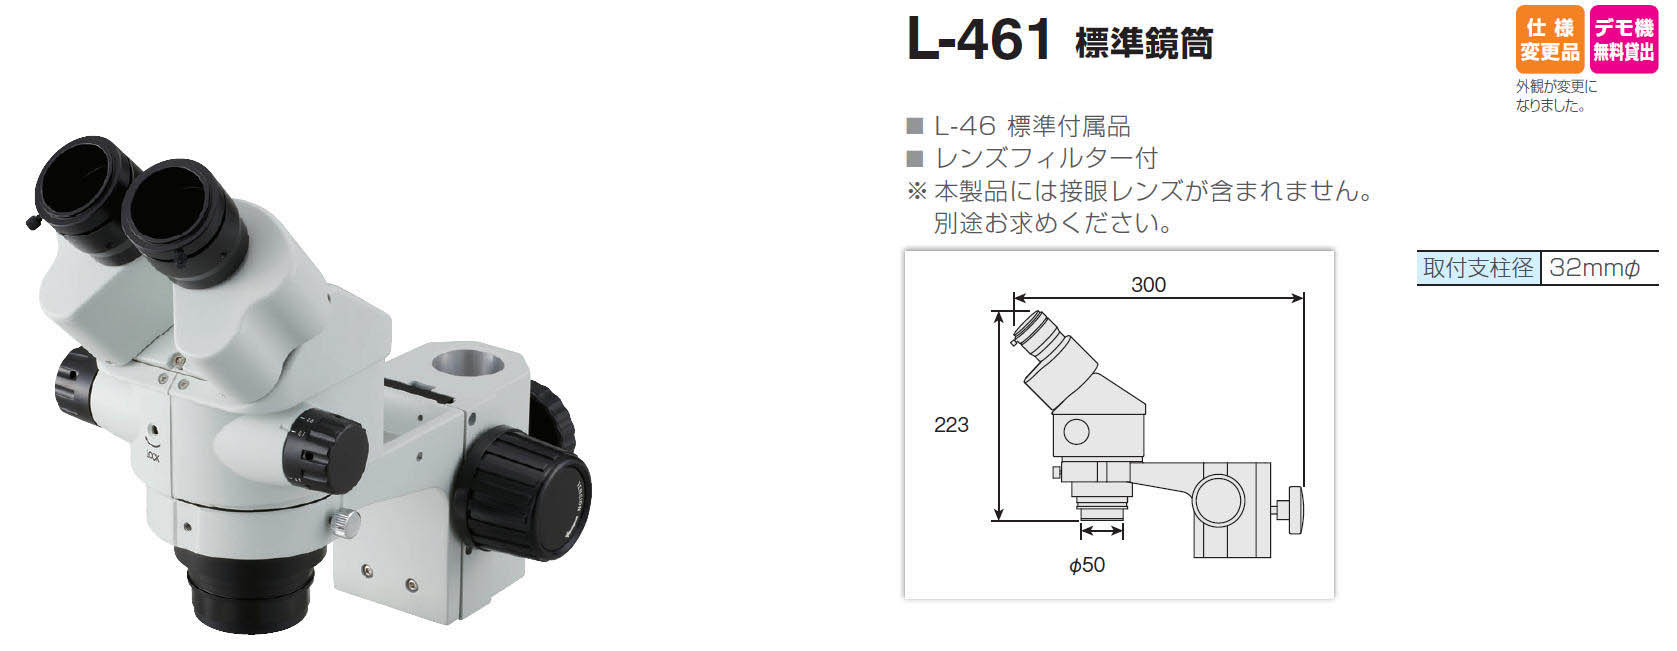 オープニング ホーザン 標準鏡筒 L-461 fisd.lk